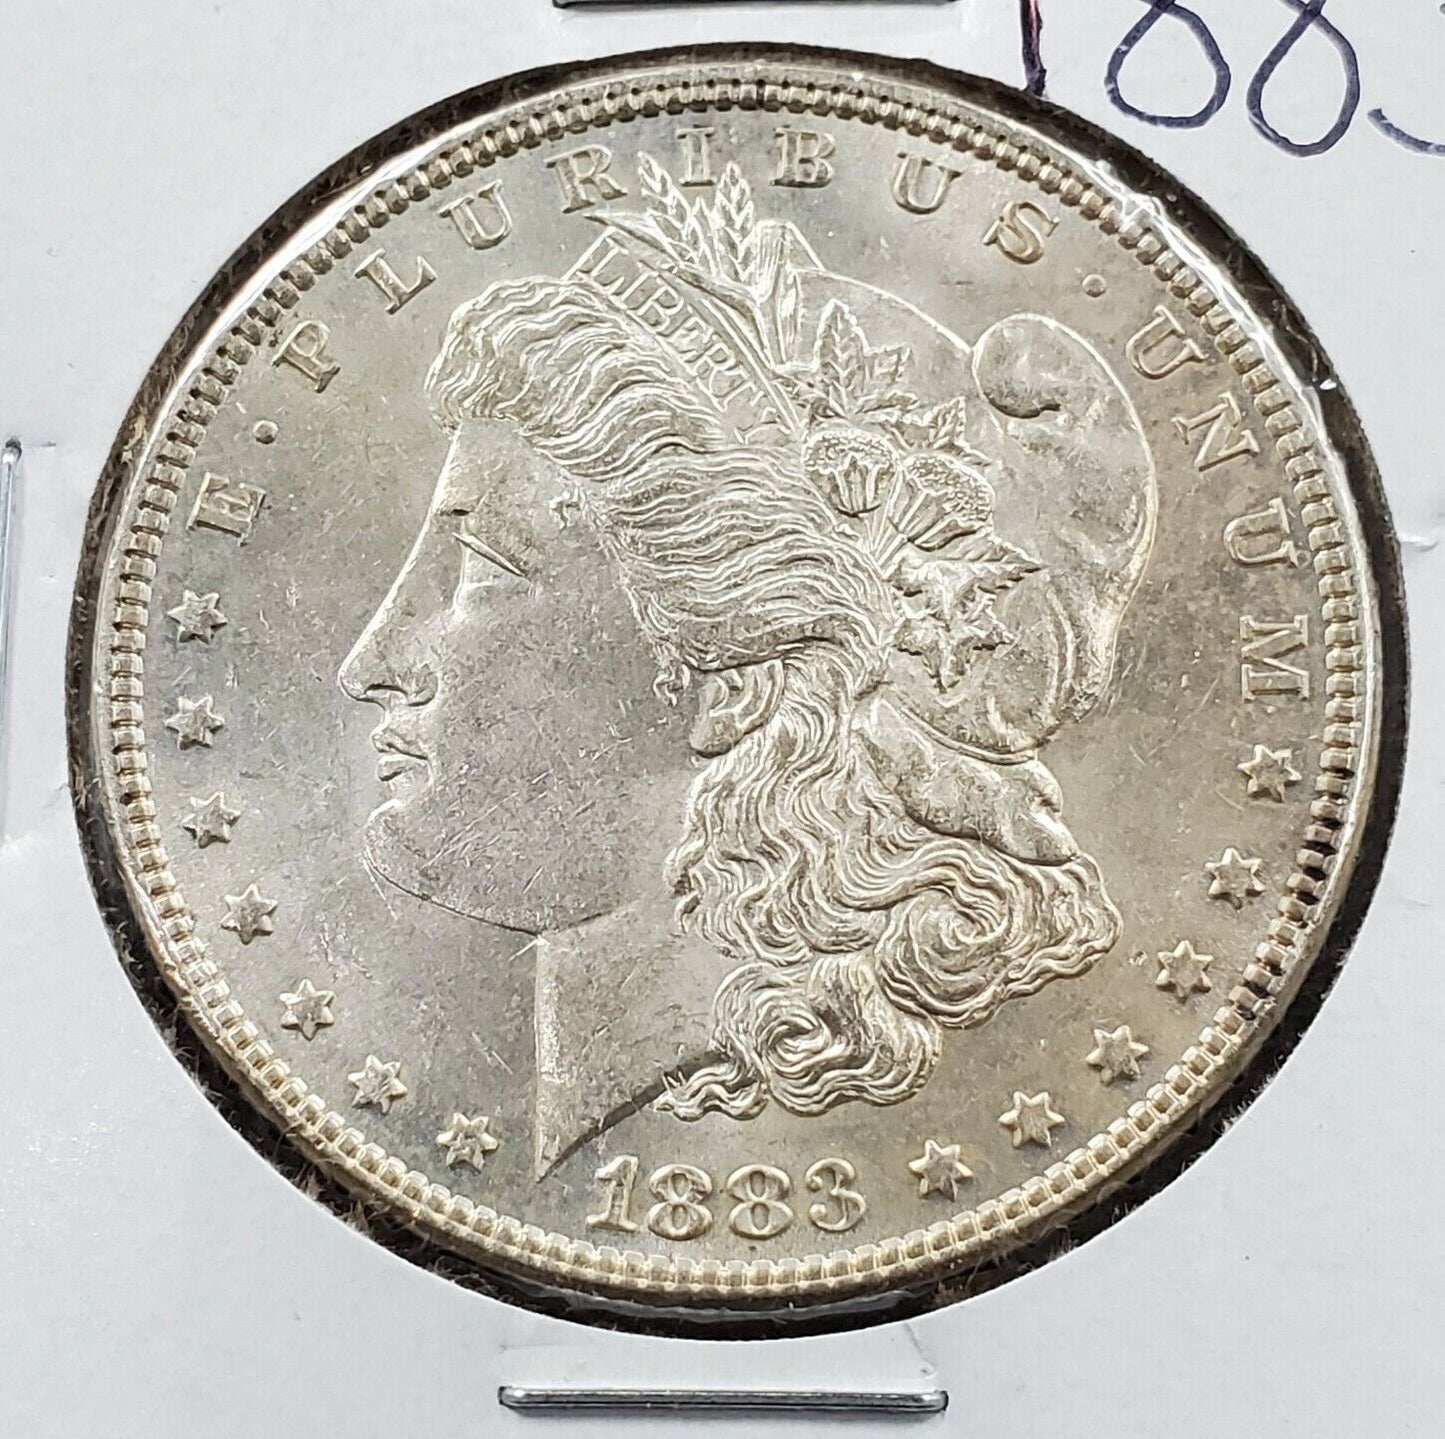 1883 P $1 Morgan Eagle Silver Dollar Coin Choice BU UNC 138 Years Anniversary